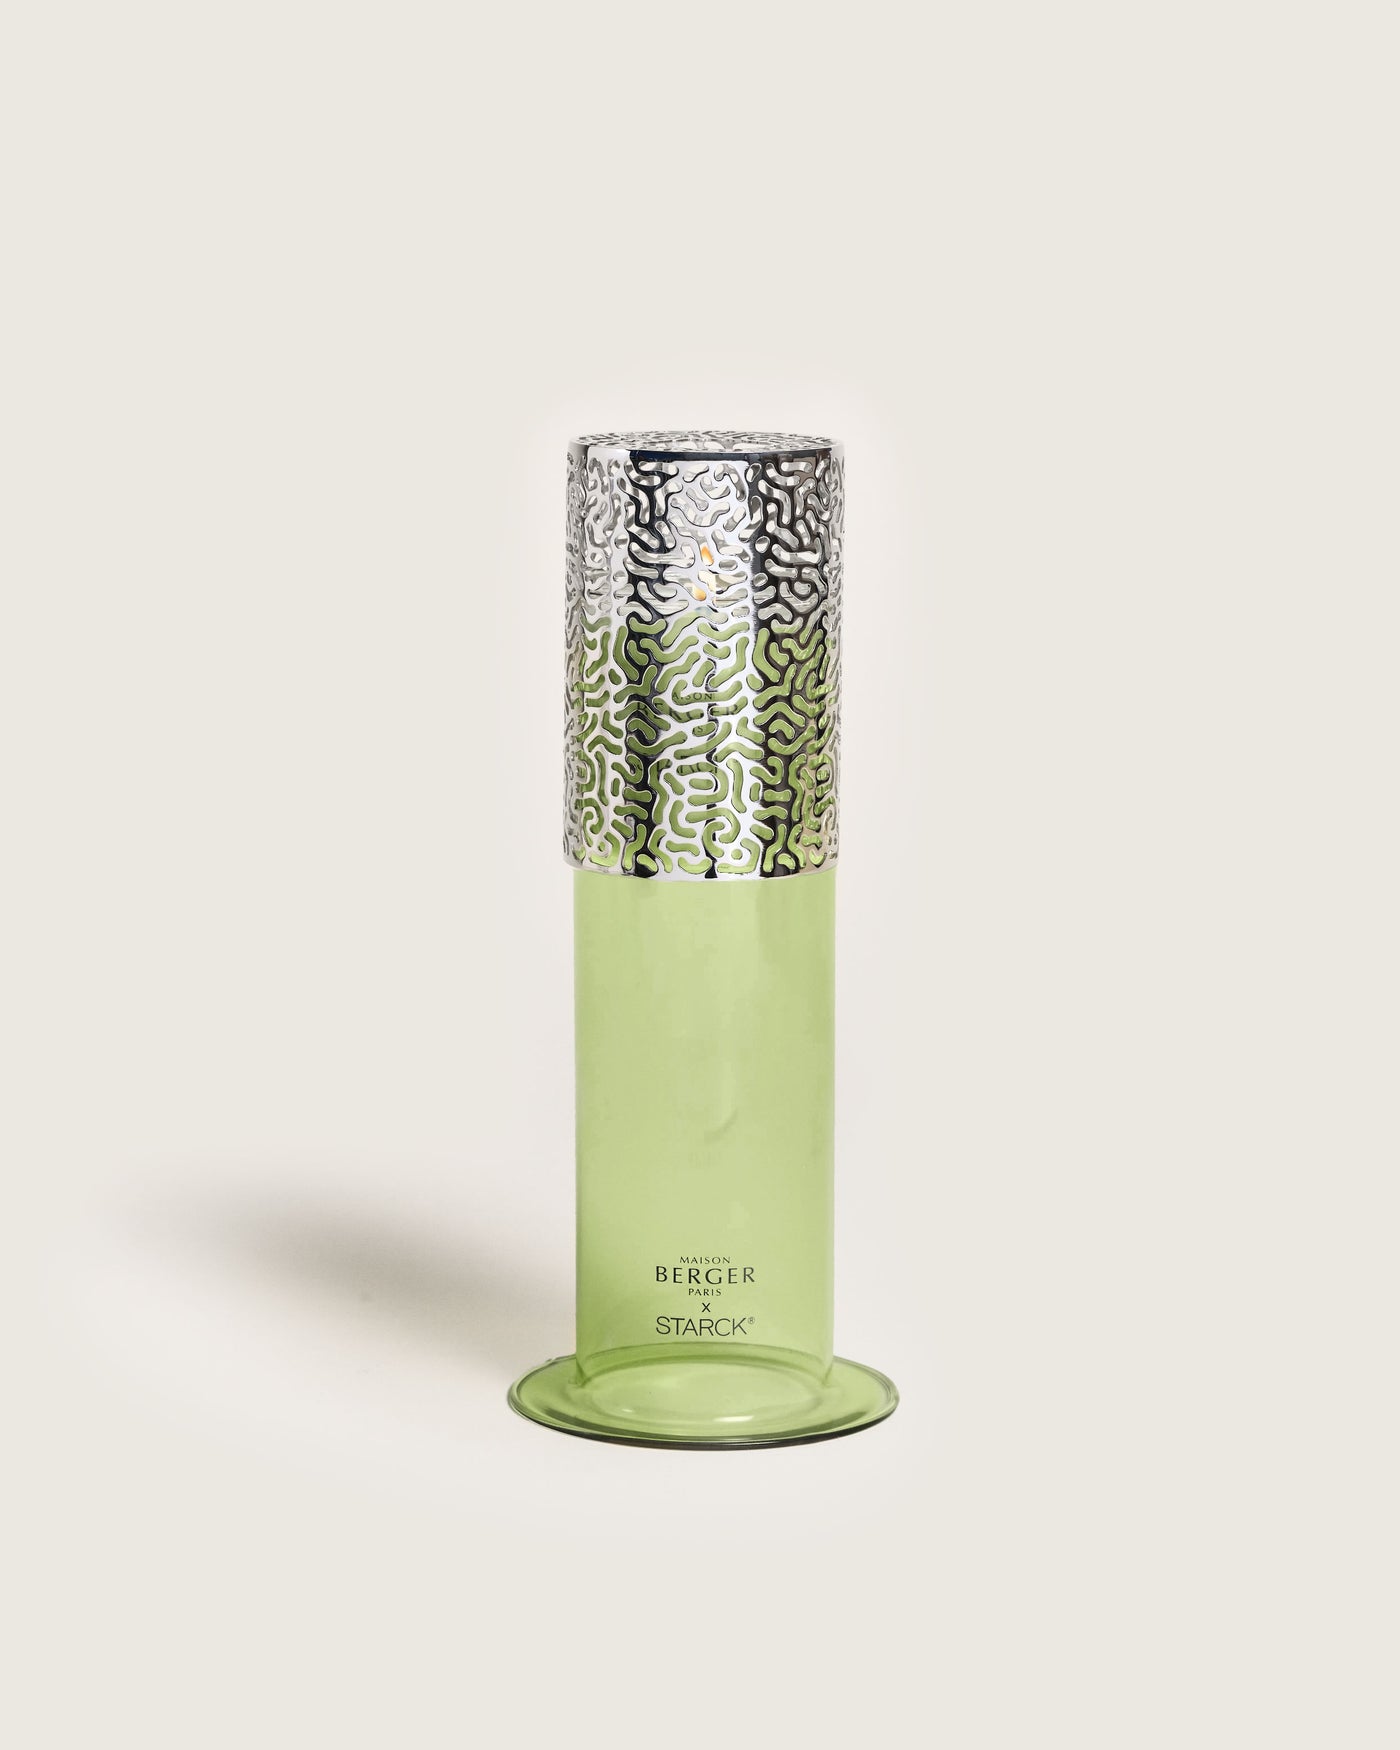 Coffret Lampe Berger by Starck Verte & parfum Peau d'Ailleurs